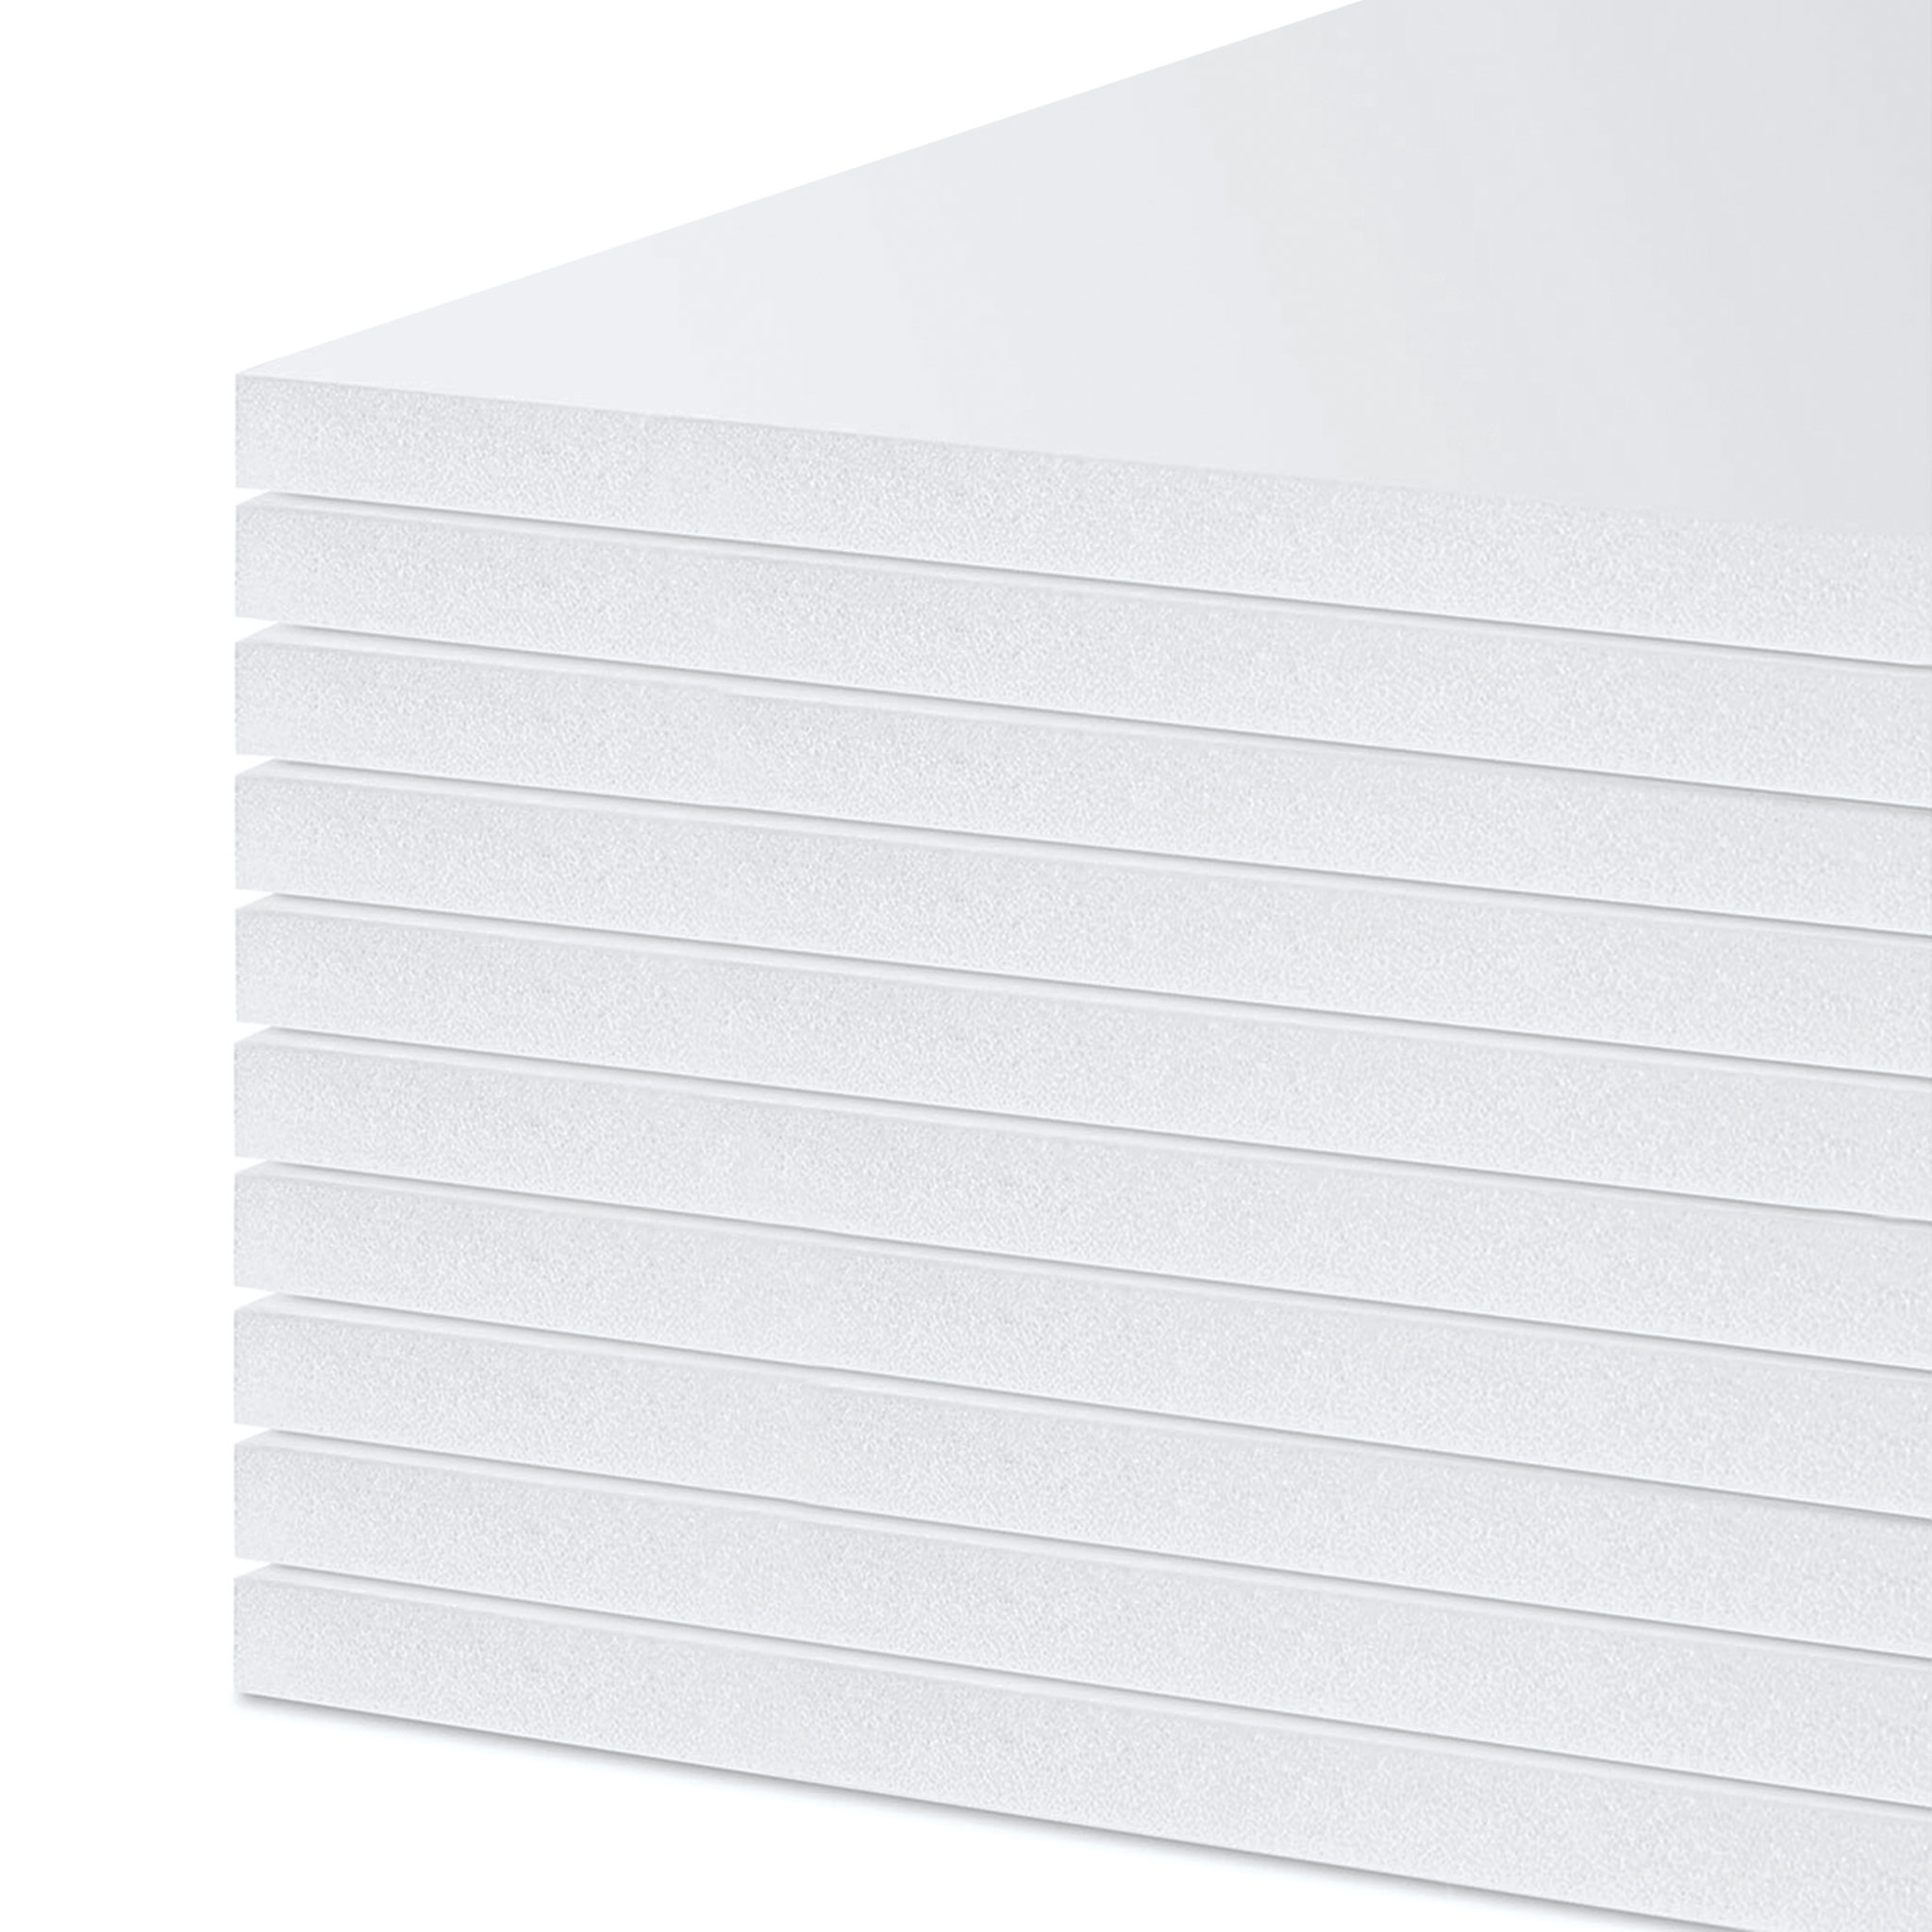 48x96x1/2 inch White Foam Board 12 pack